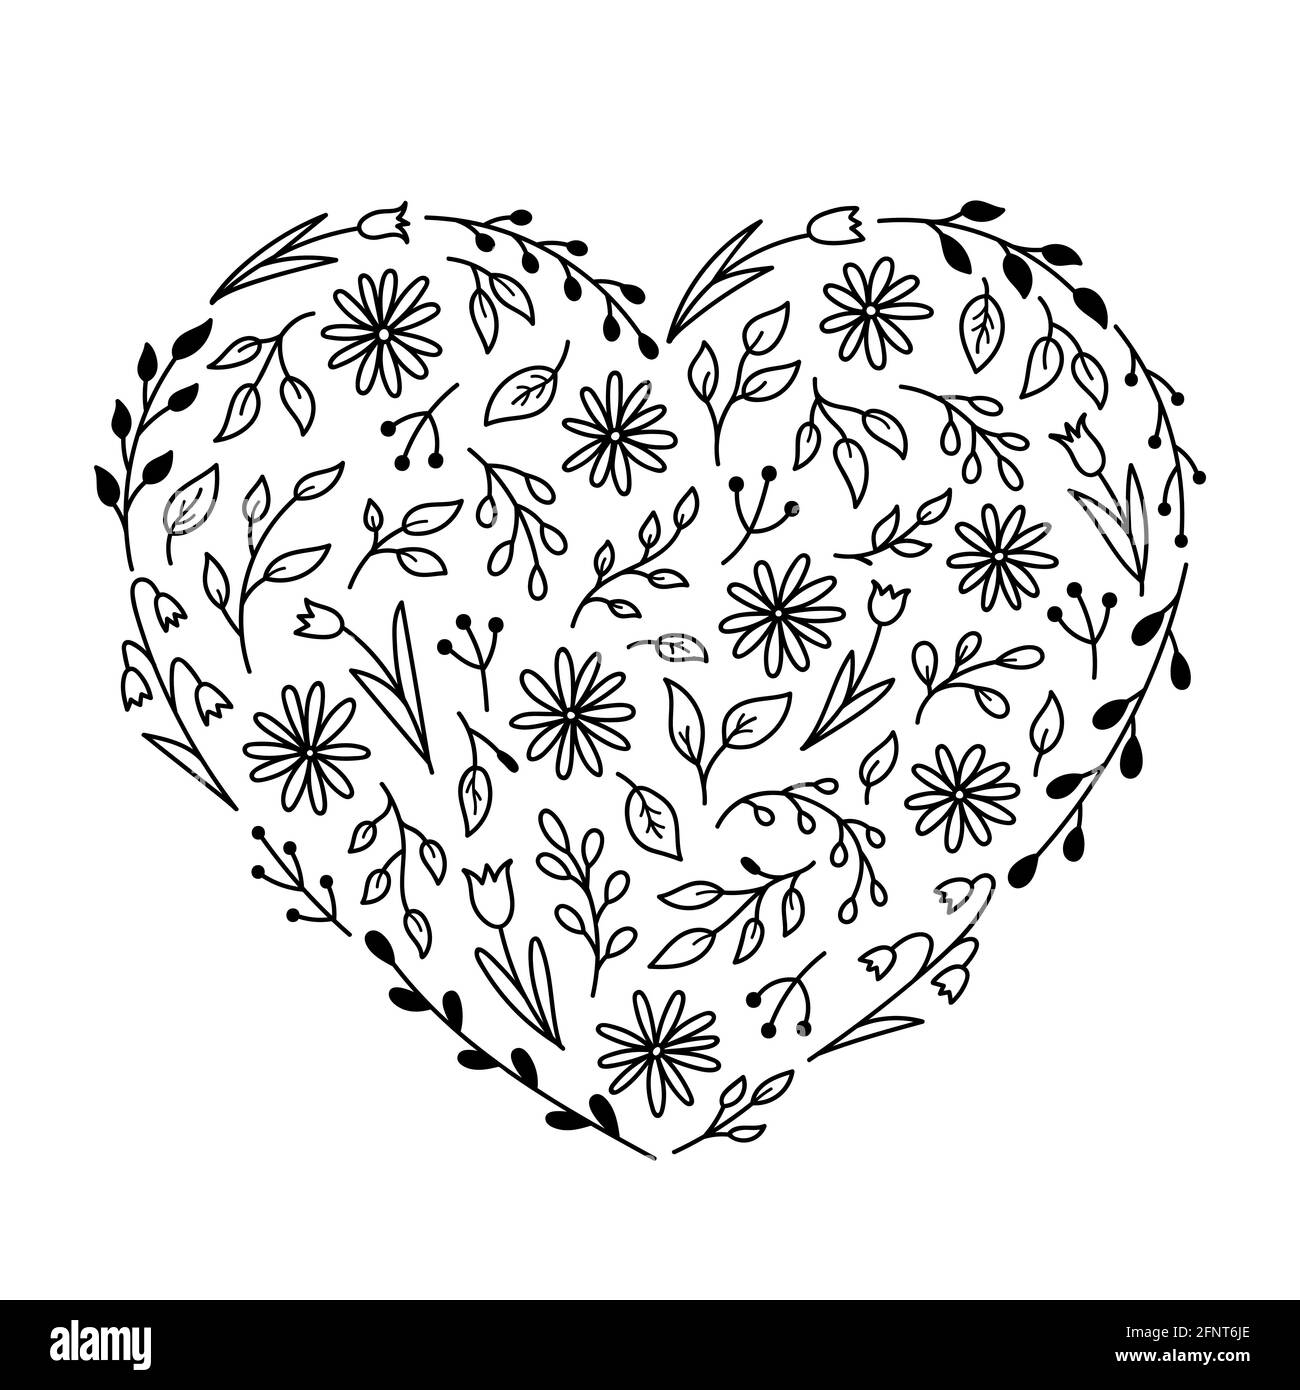 Elementi floreali a forma di cuore. Chamomiles, tulipani, ramoscelli e foglie in stile doodle. Illustrazione vettoriale disegnata a mano. Modello per la progettazione di biglietti d'auguri, inviti, copertine. Illustrazione Vettoriale